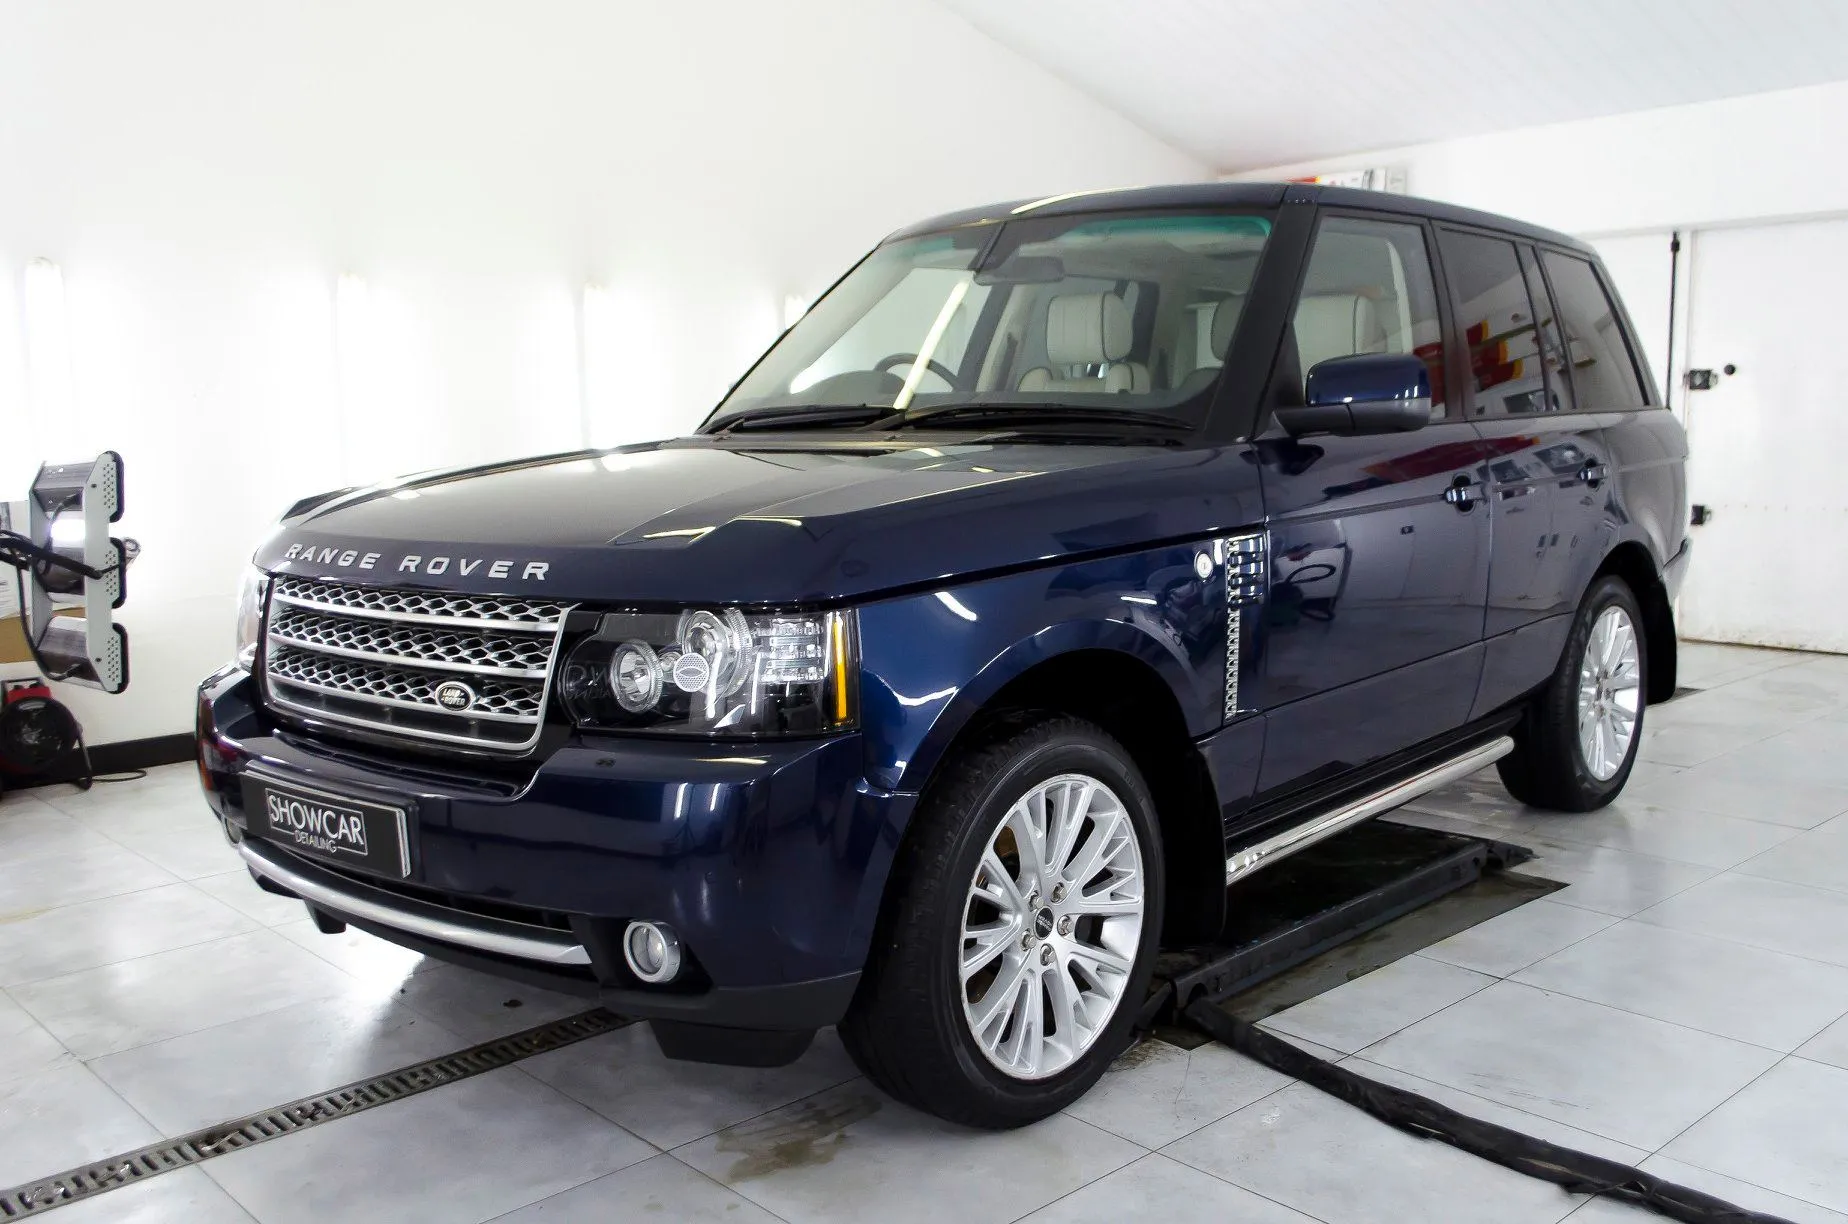 Land Rover Range Rover Westminster - korekta lakieru + sprzątanie wnętrza